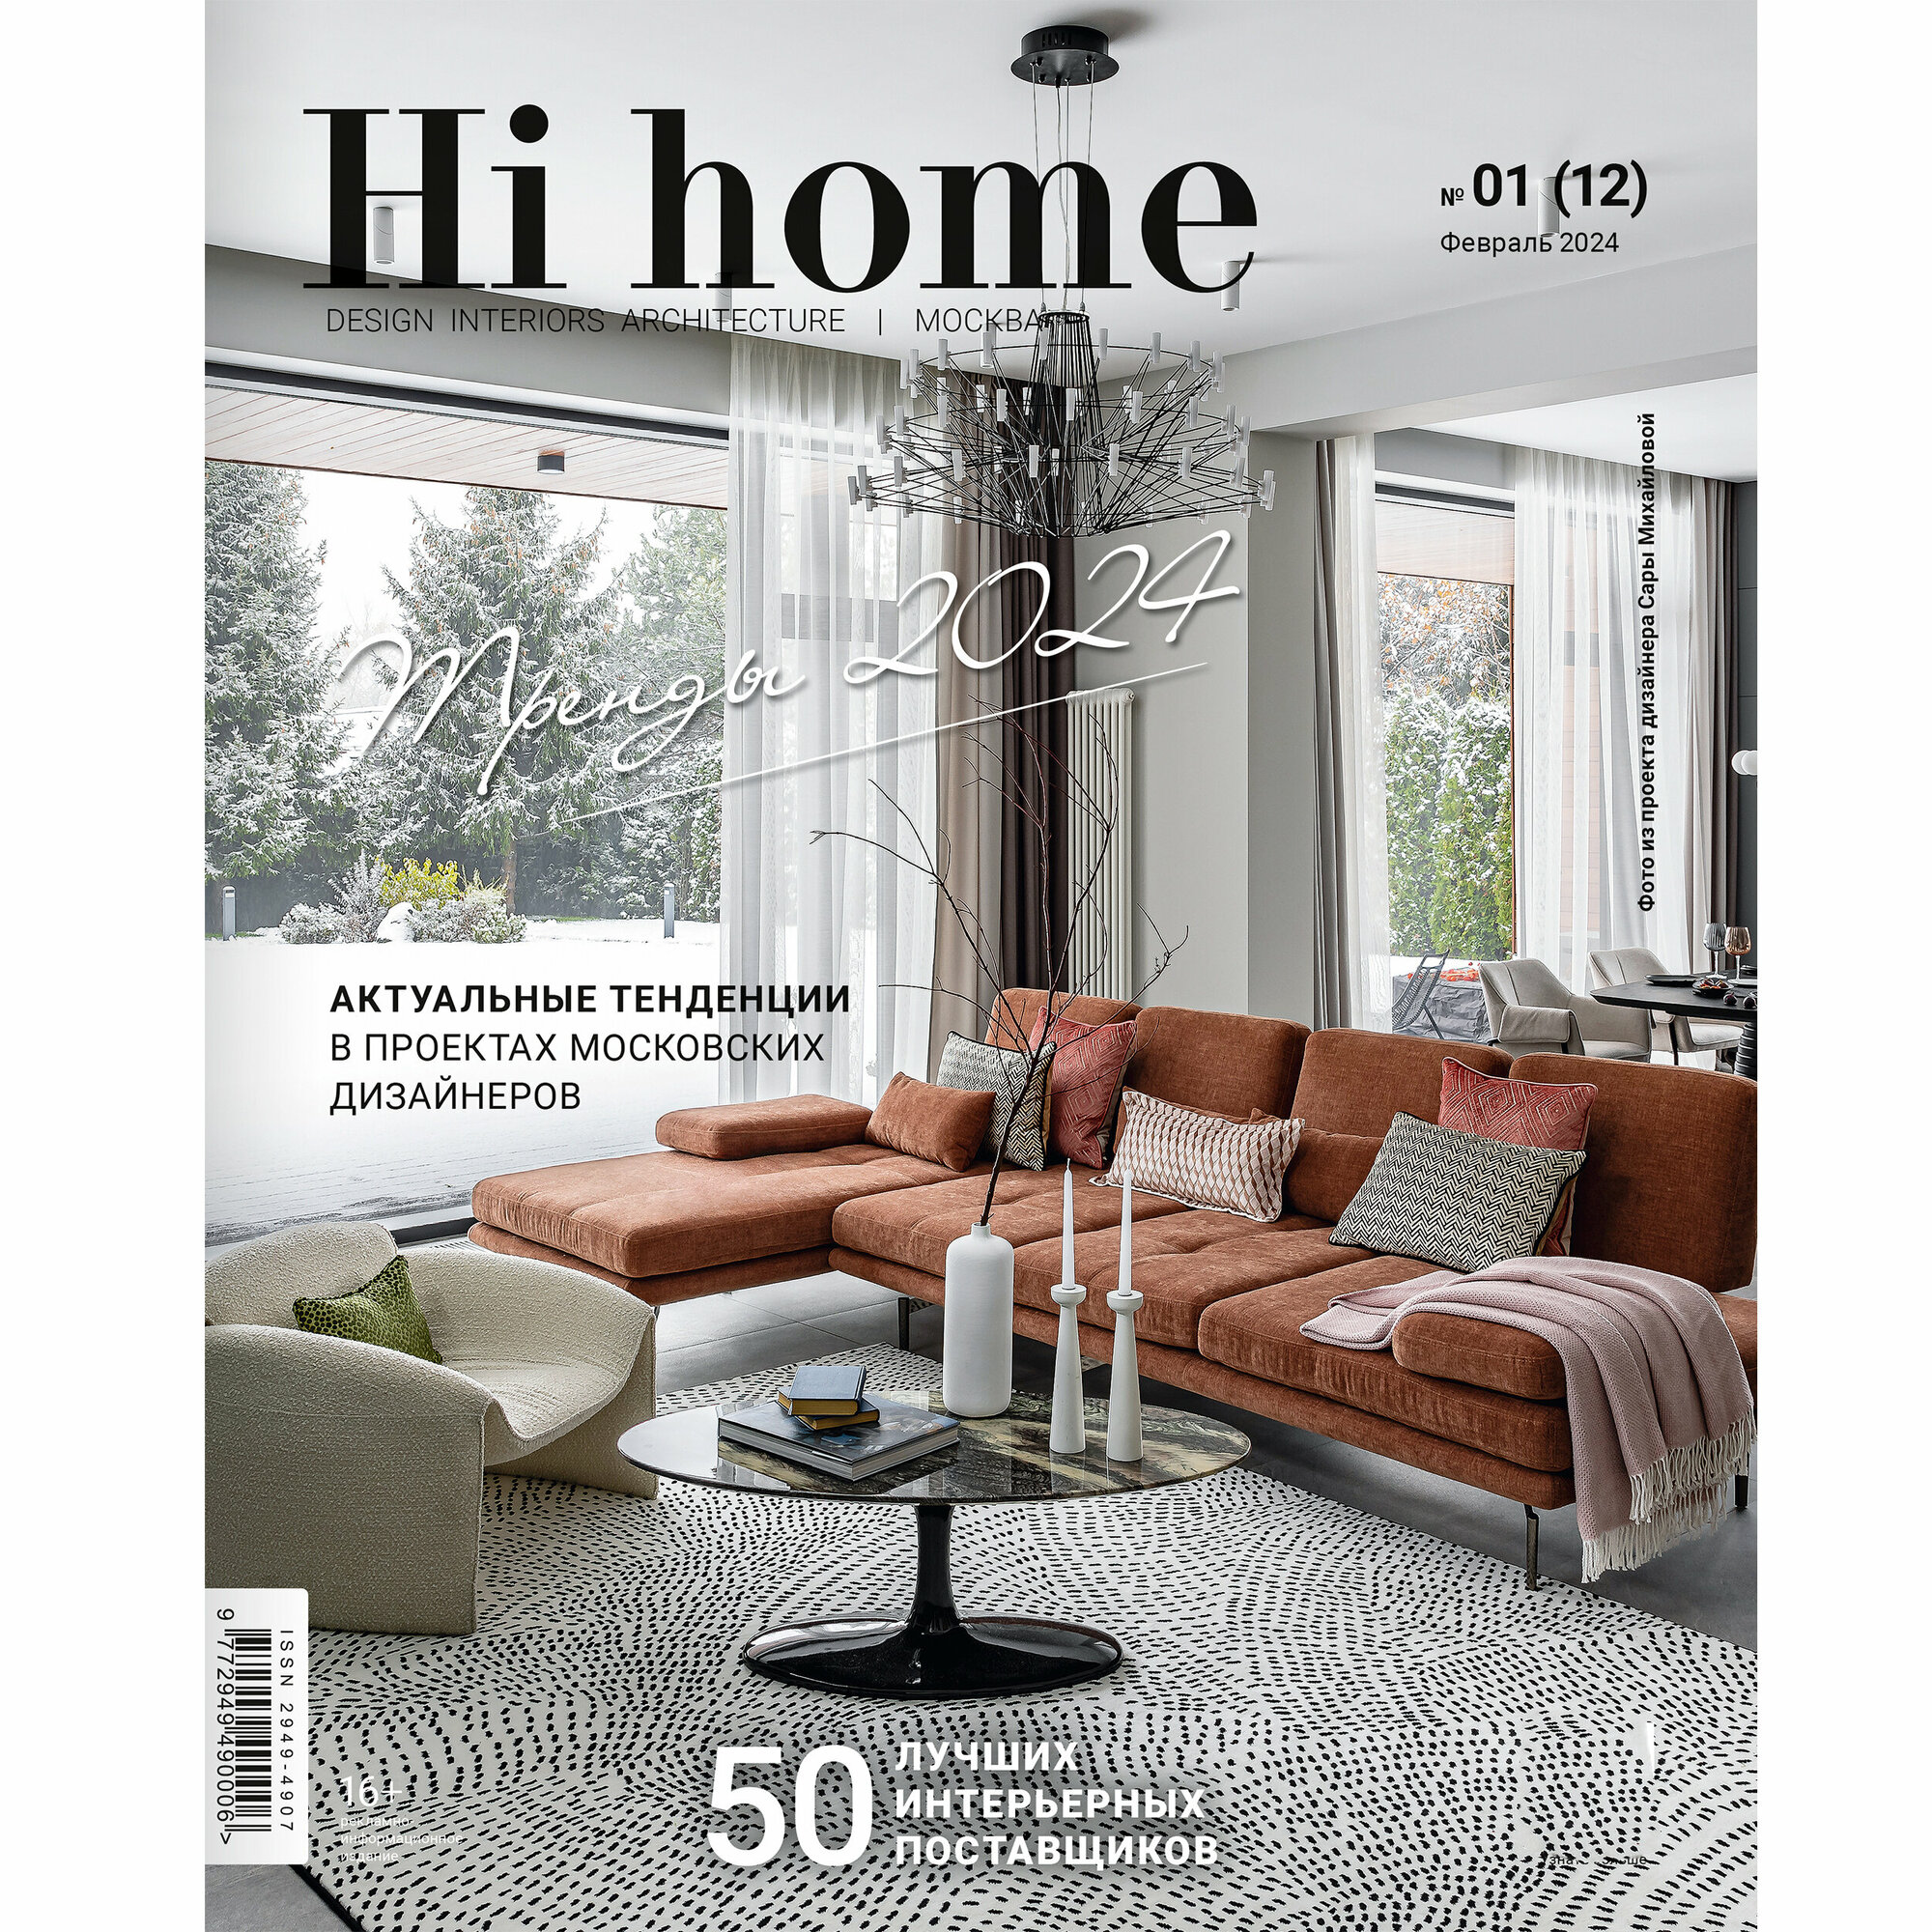 Интерьерный журнал Hi home Design Interiors Architecture, Москва, № 01 (12) февраль 2024